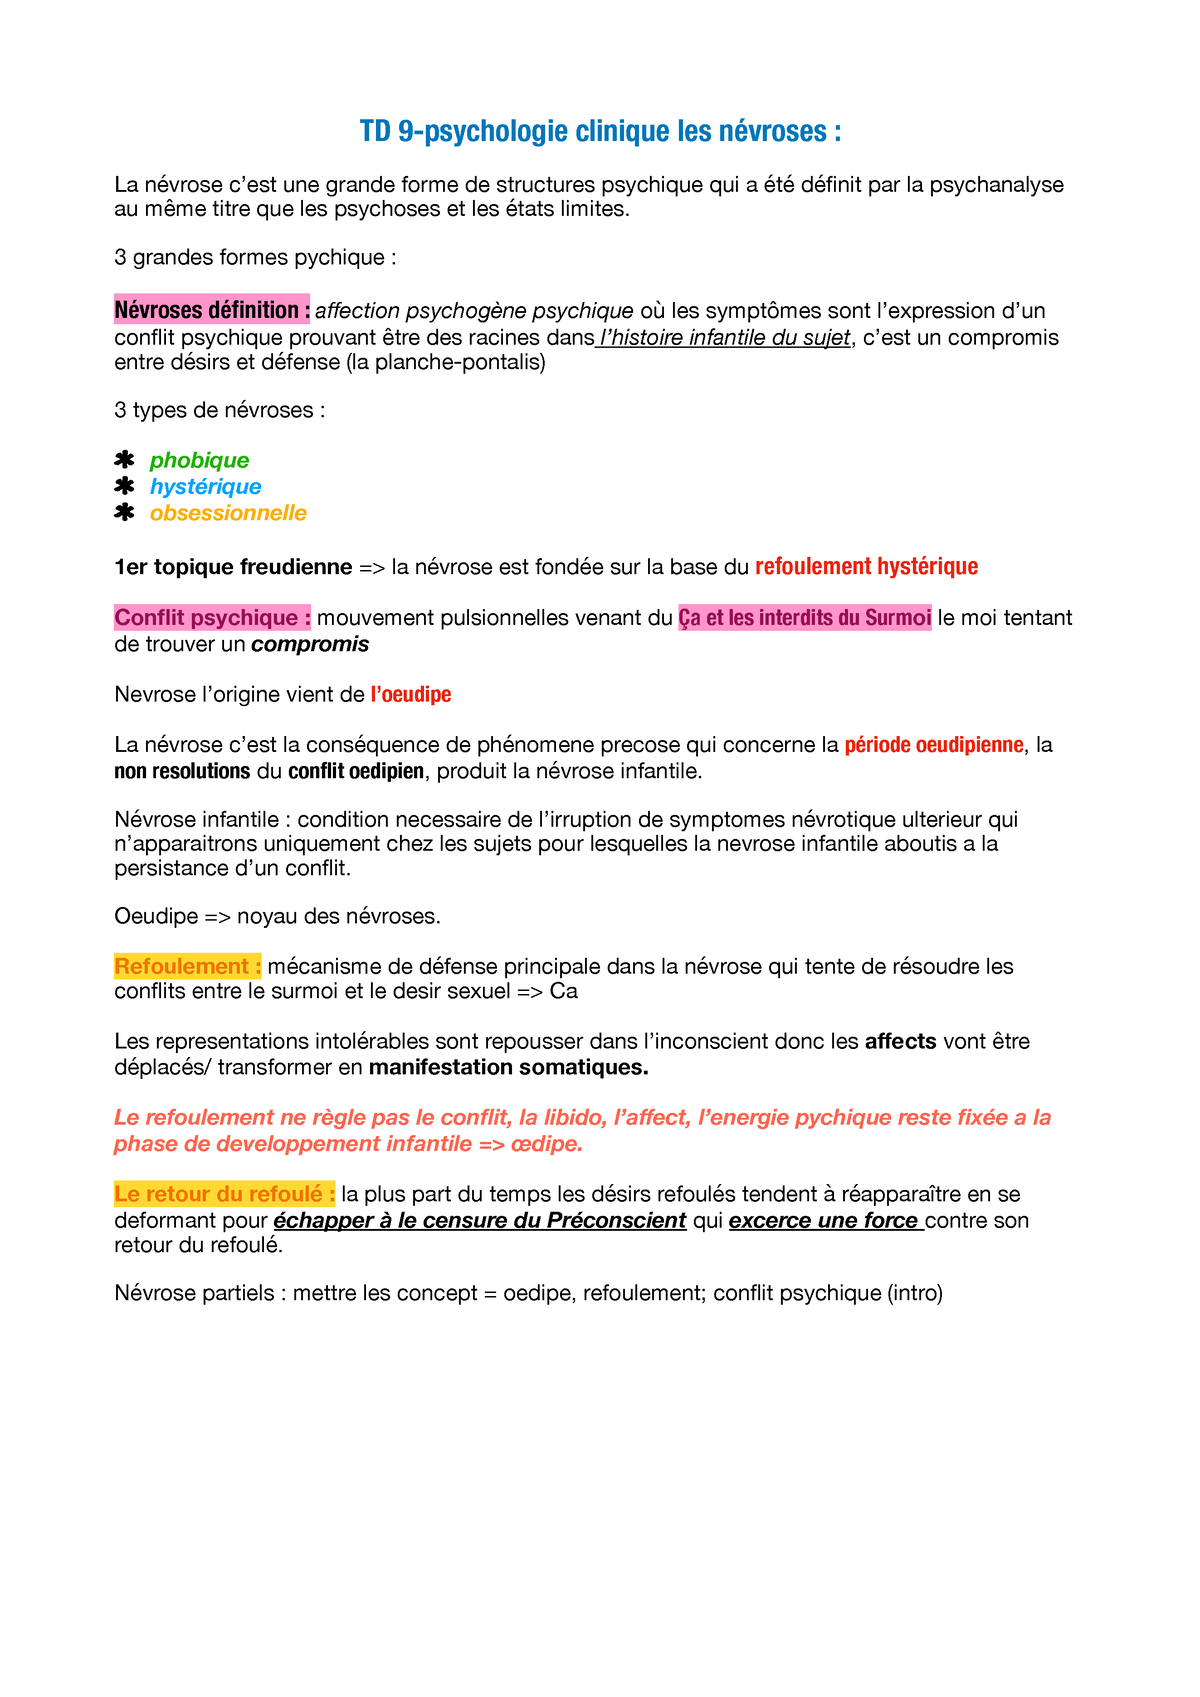 TD 9- psycho cliniq pdf - TD sur les névroses hystériques ...